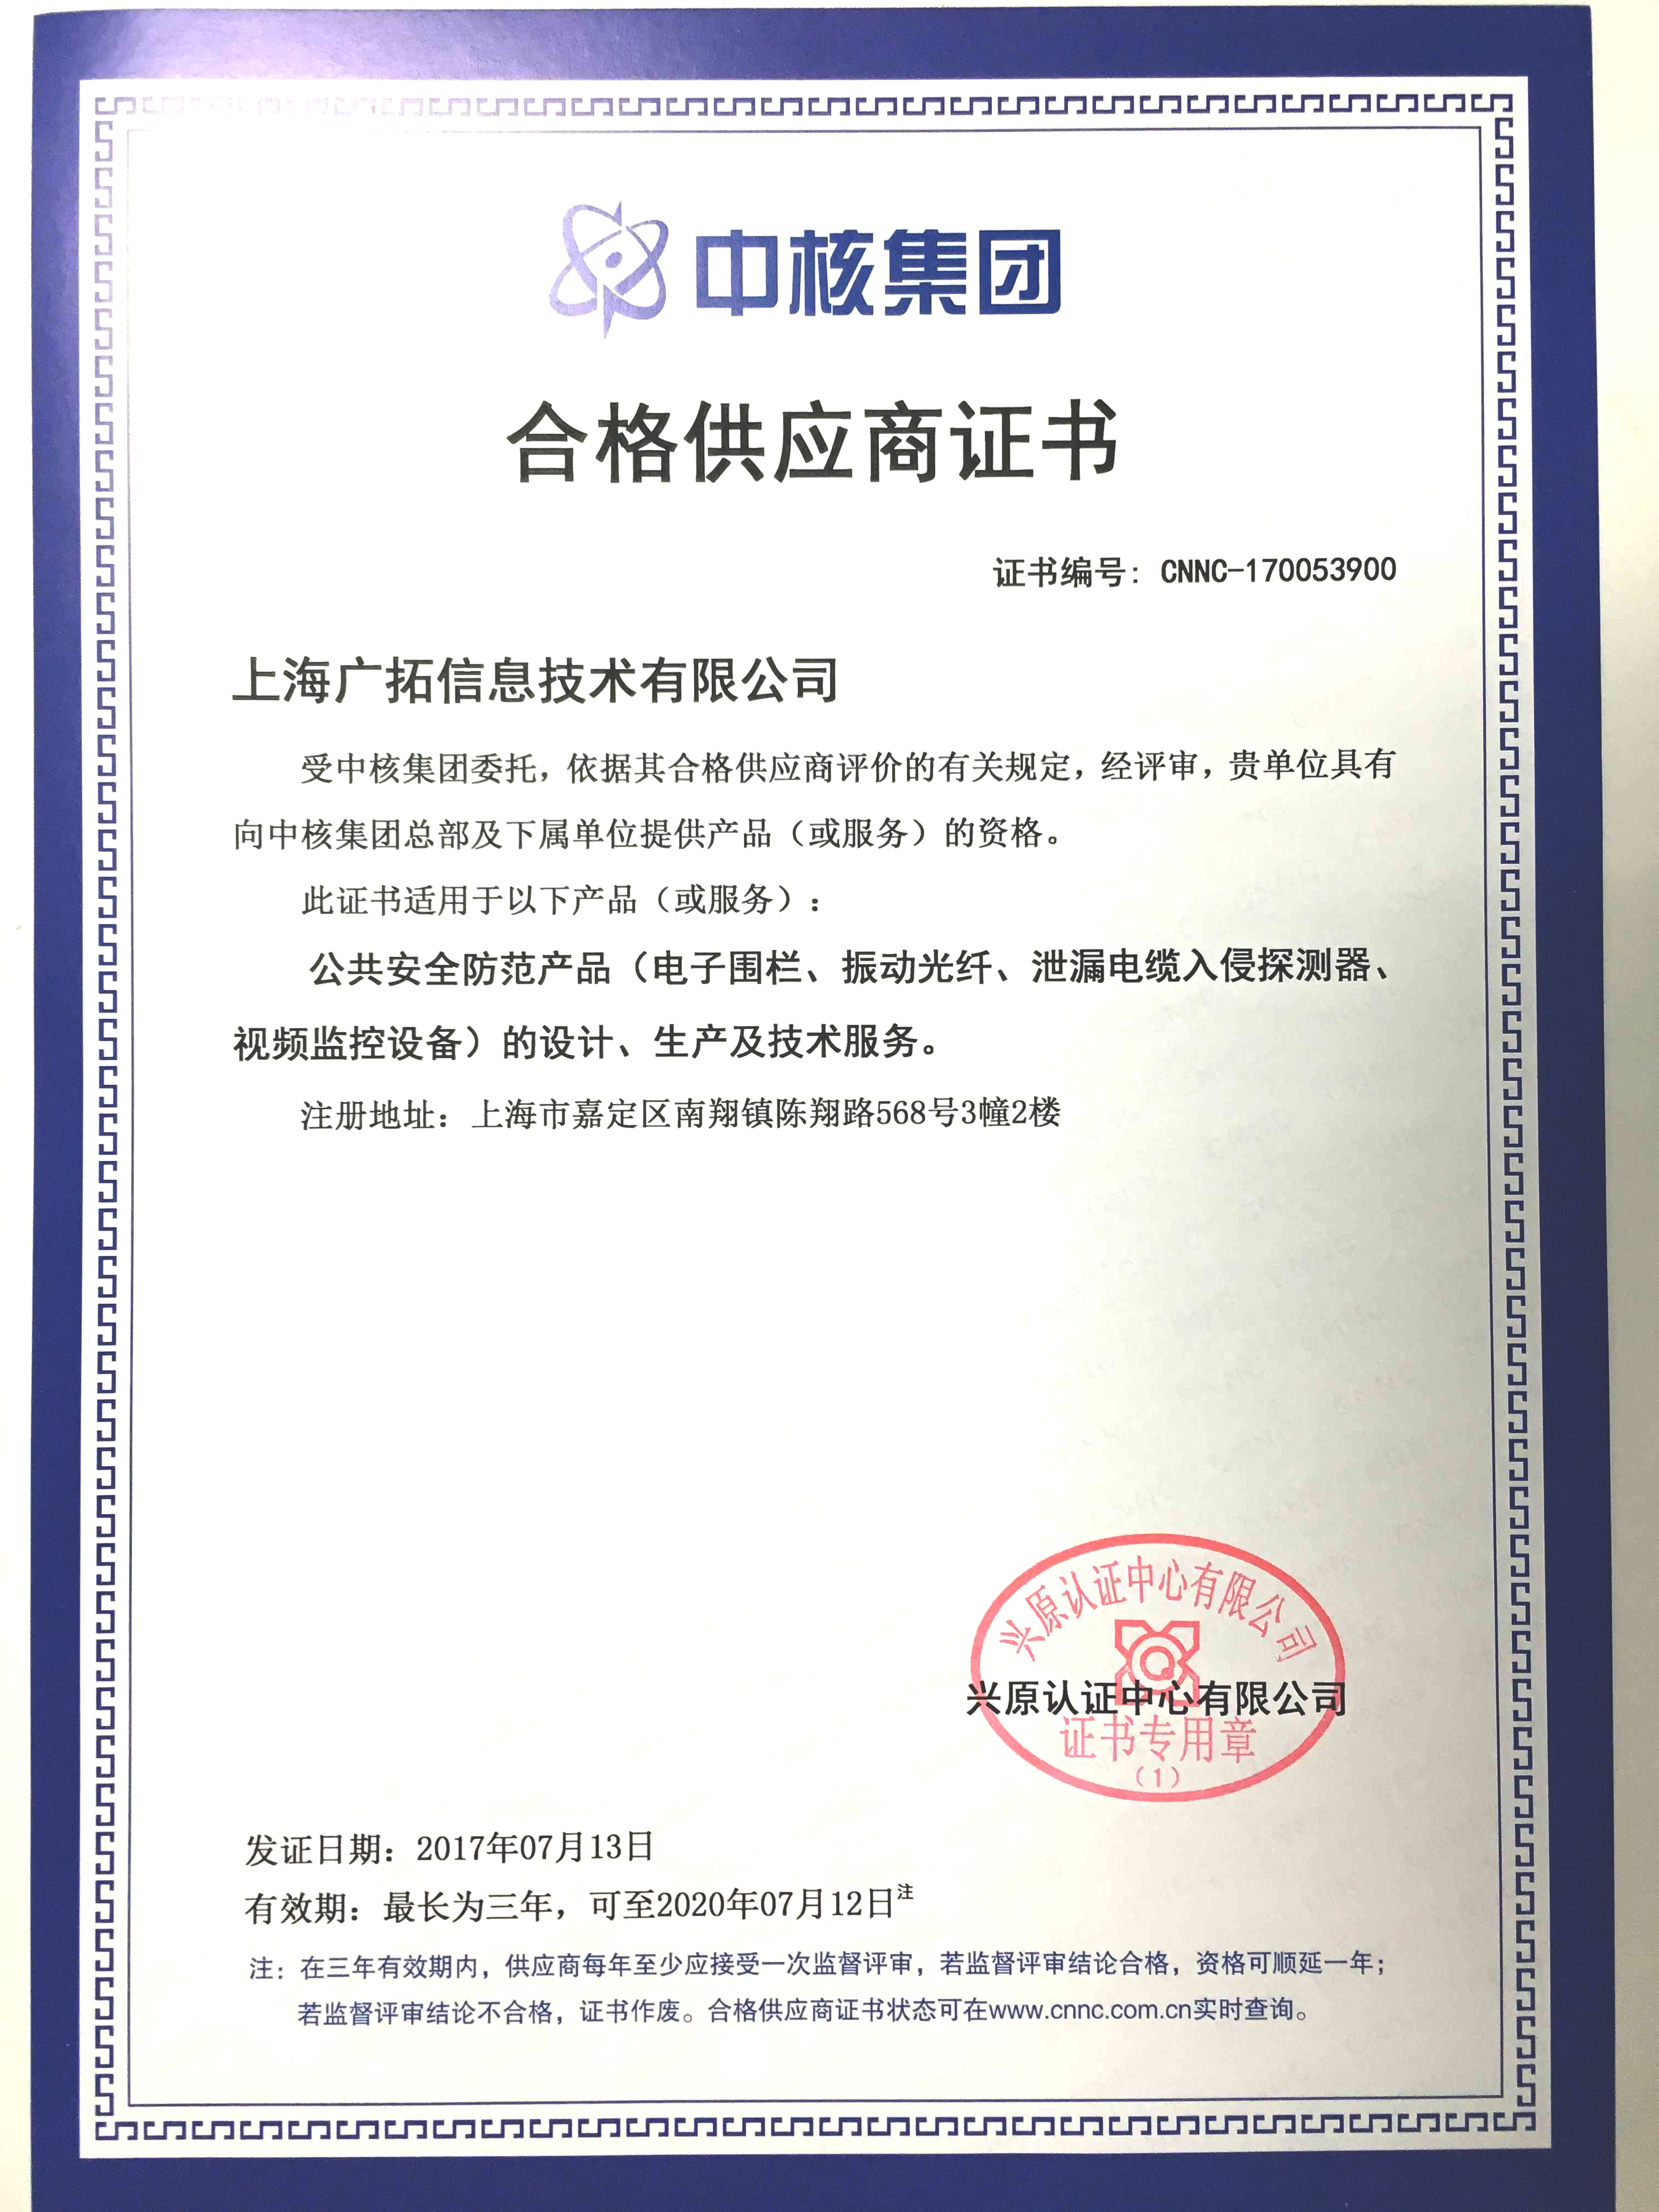 2017年合格供应商证书